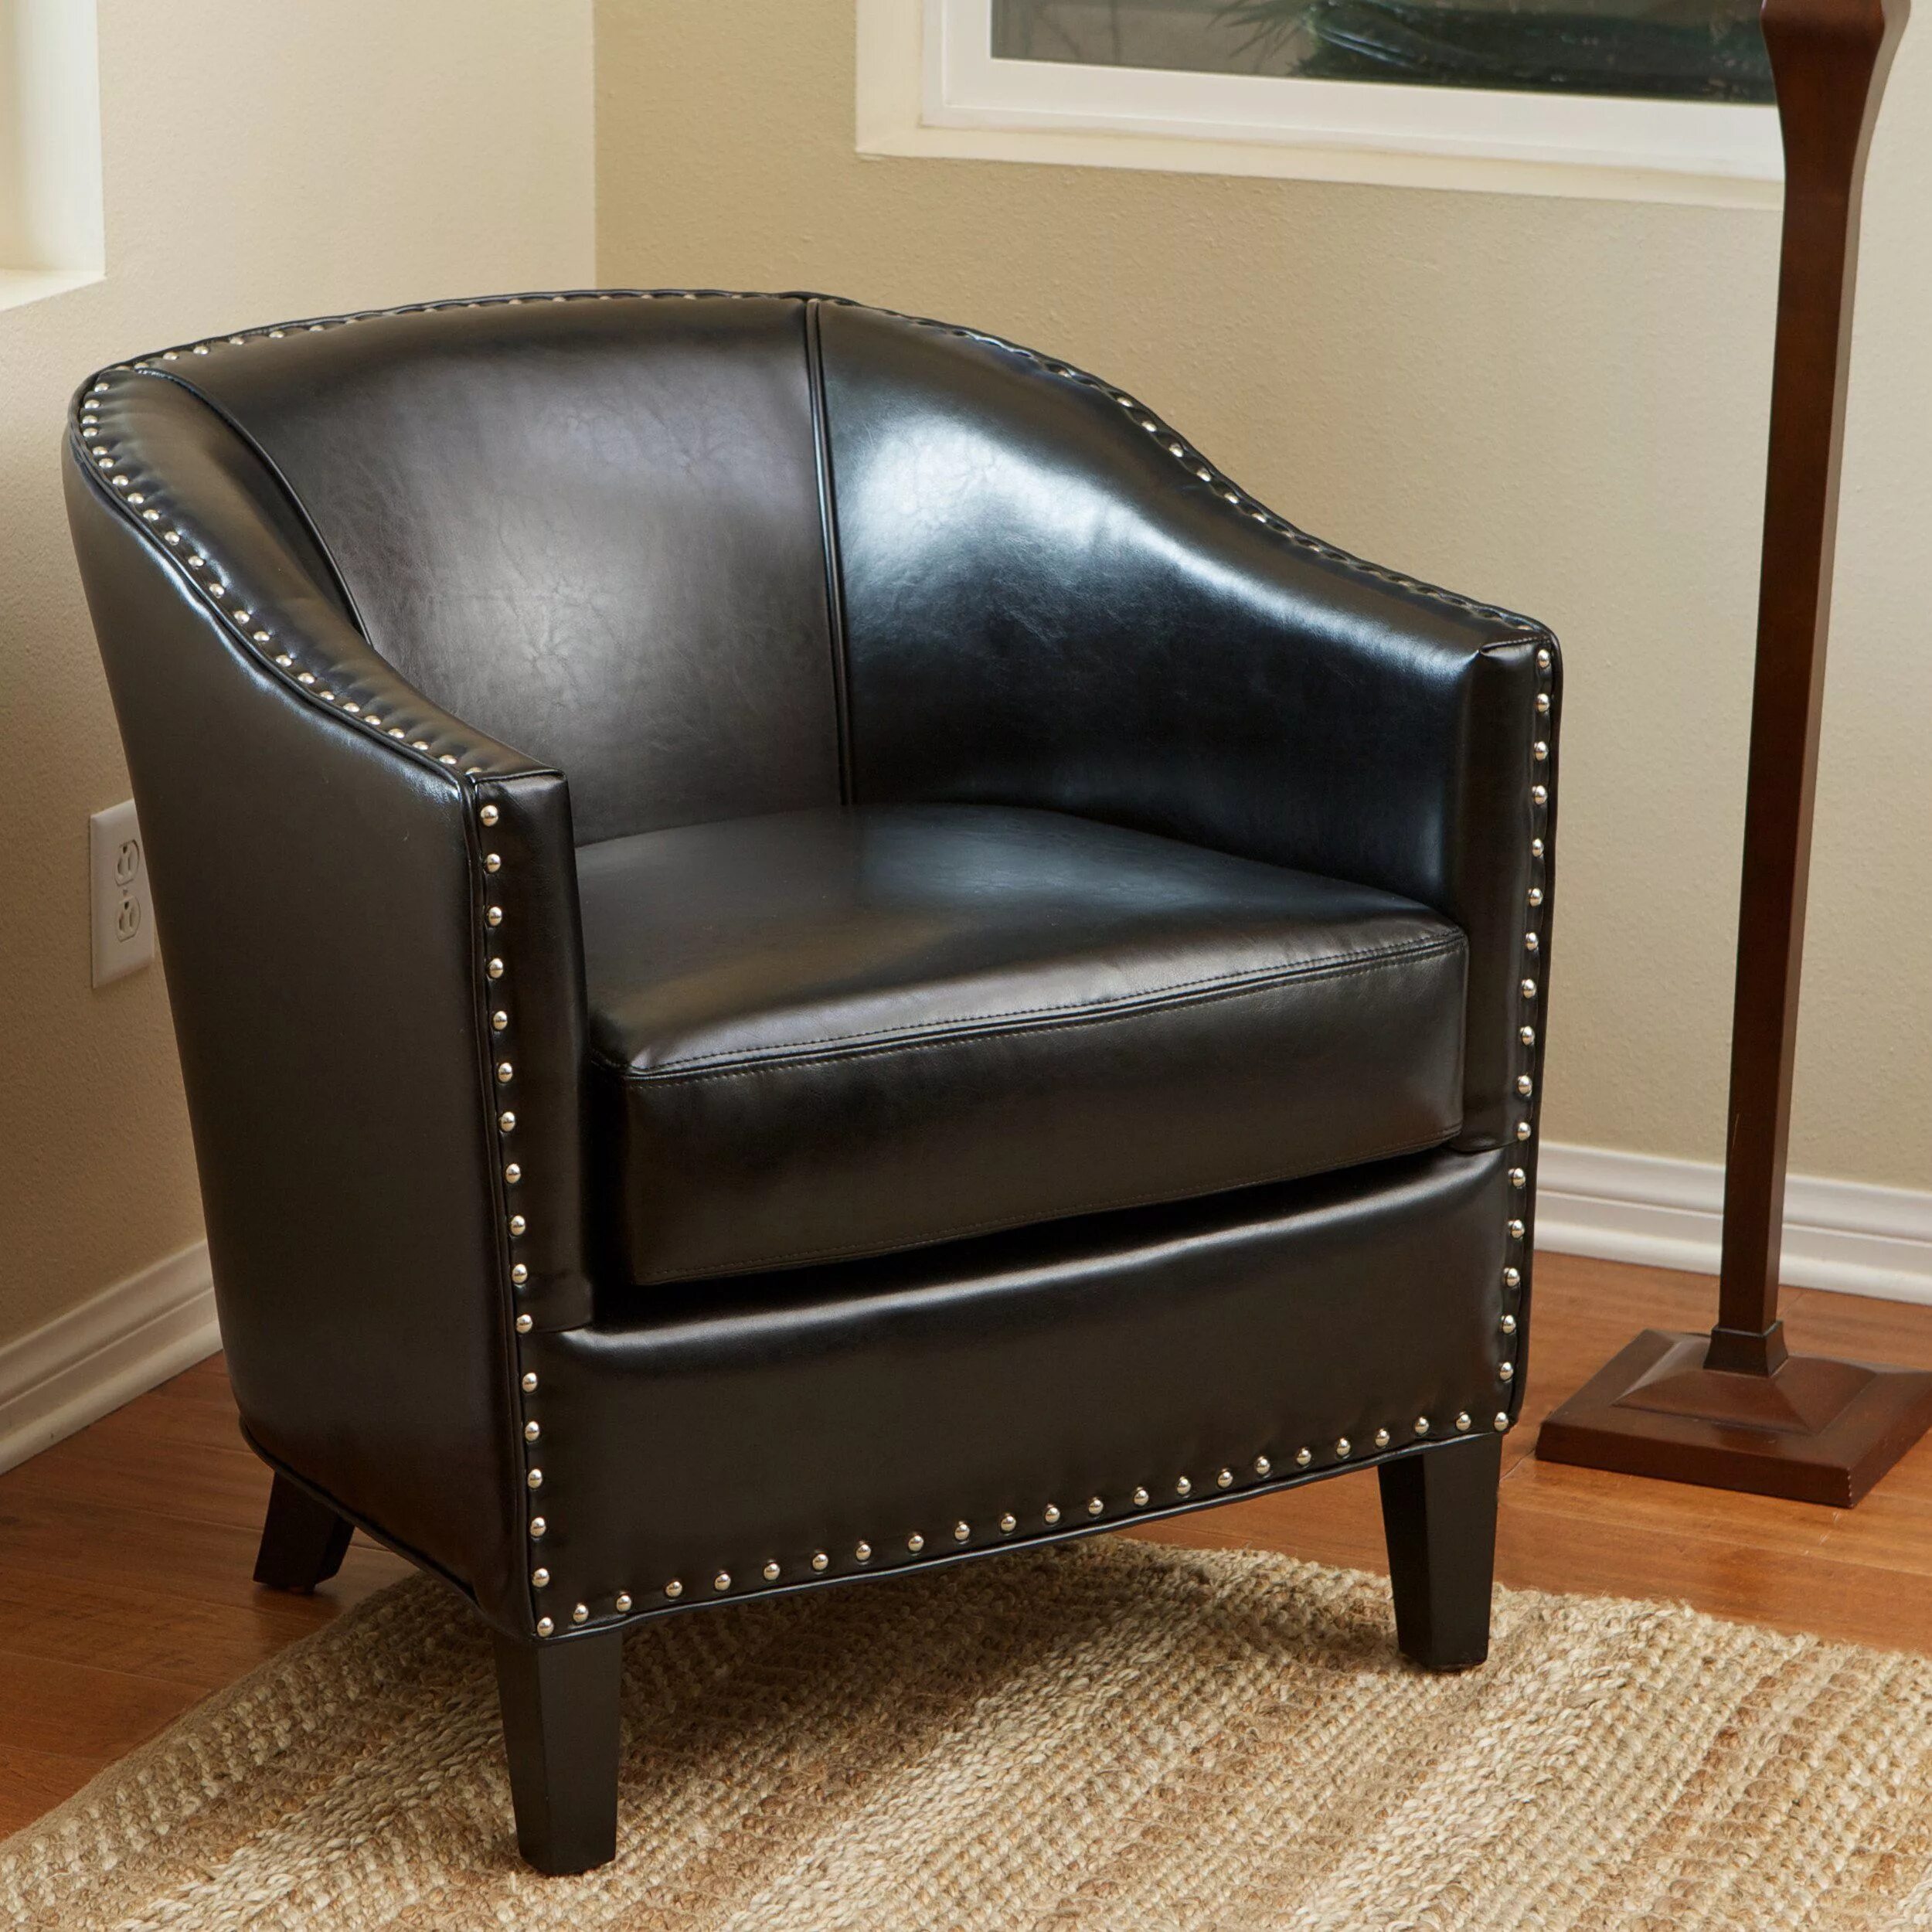 Высокое кожаное кресло. Кресло кожаное Furniture 9589 Black. Ilona Chair кресло кожаное. Кресло Savoy Leather Chair. Кресло Ватсон черное кожа.